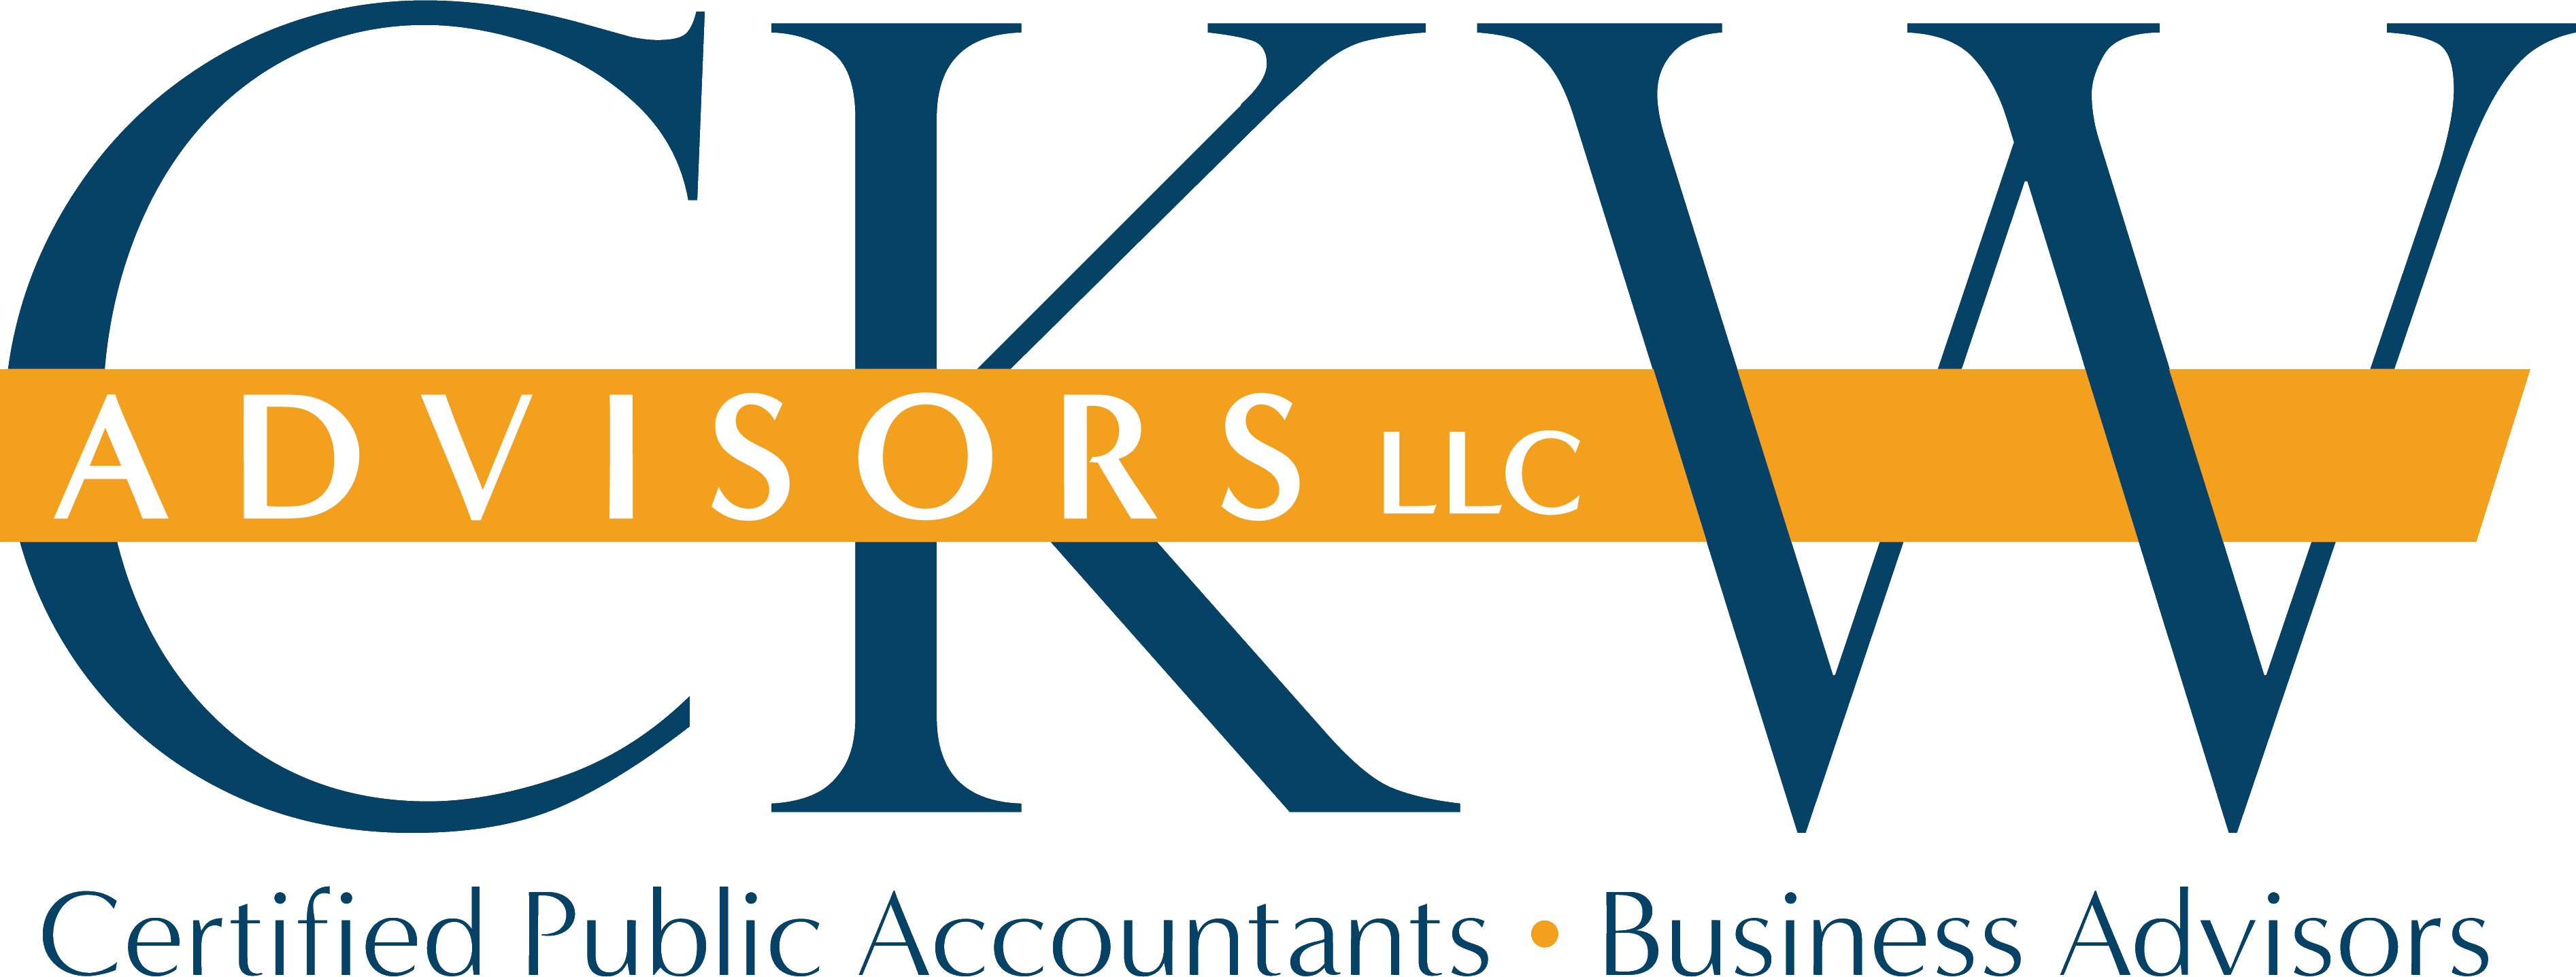 CKW Advisors, LLC